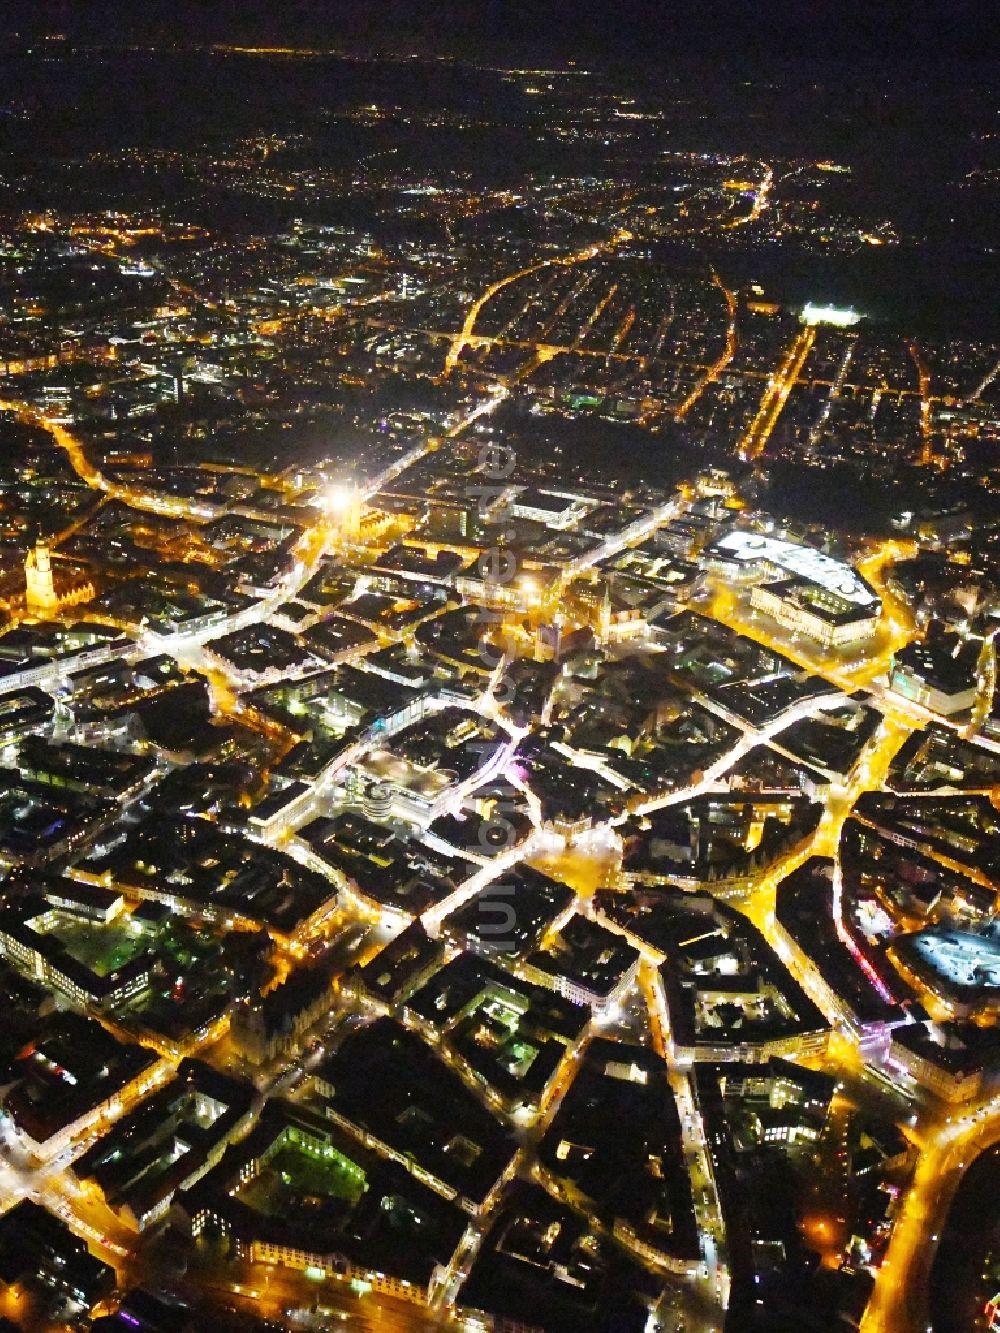 Braunschweig bei Nacht von oben - Nachtluftbild Stadtzentrum im Innenstadtbereich in Braunschweig im Bundesland Niedersachsen, Deutschland